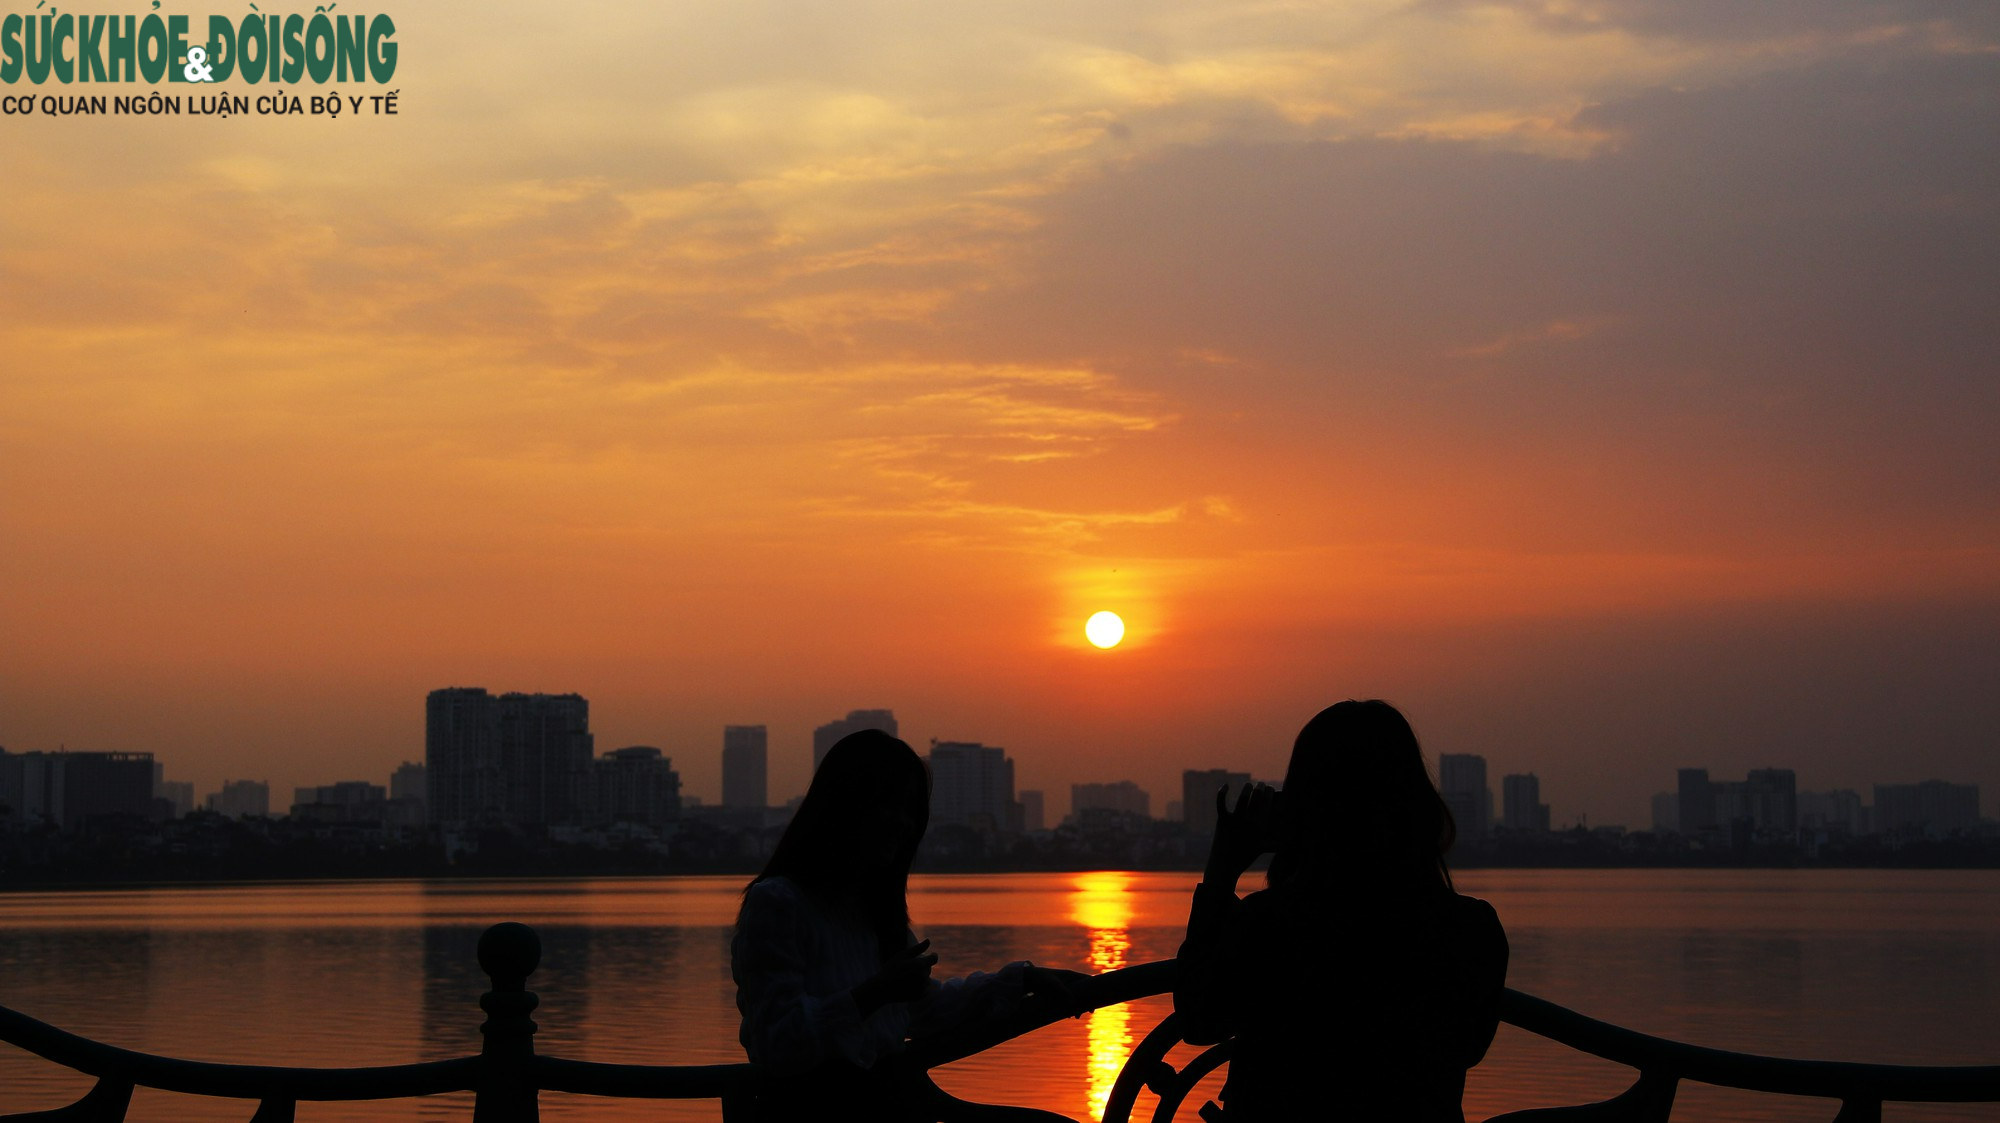 Hồ Tây nổi tiếng là một trong những địa điểm du lịch hấp dẫn nhất thủ đô Hà Nội, với vẻ đẹp yên bình và thơ mộng. Cùng chiêm ngưỡng những tấm hình đầy quyến rũ về Hồ Tây, một nơi đáng để dành thời gian tận hưởng cùng gia đình và bạn bè.